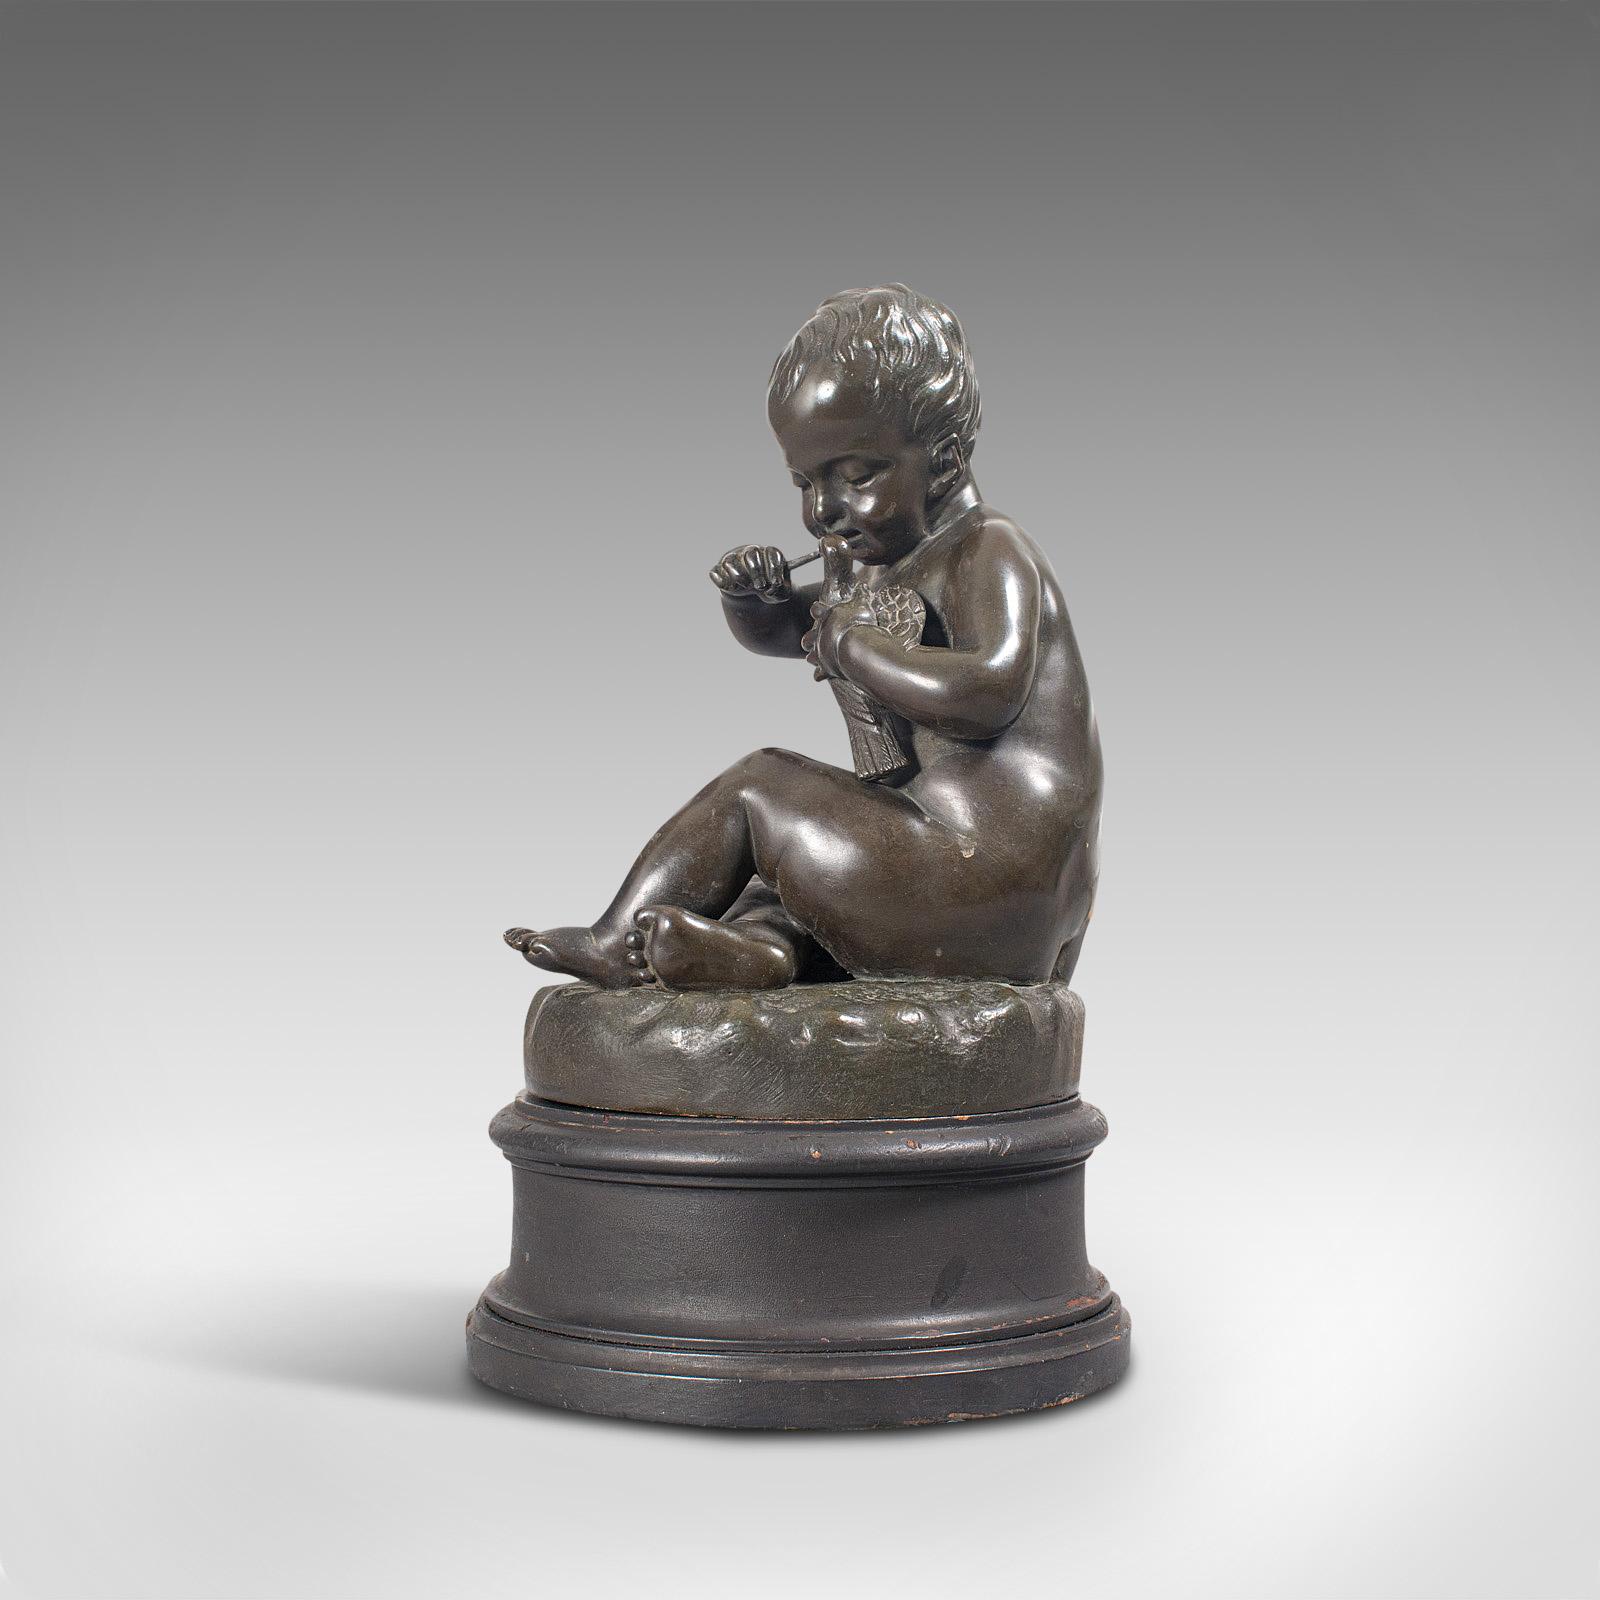 Antique Putto Statue, French, Bronze, Cherub Figure, Late 19th Century For Sale 1